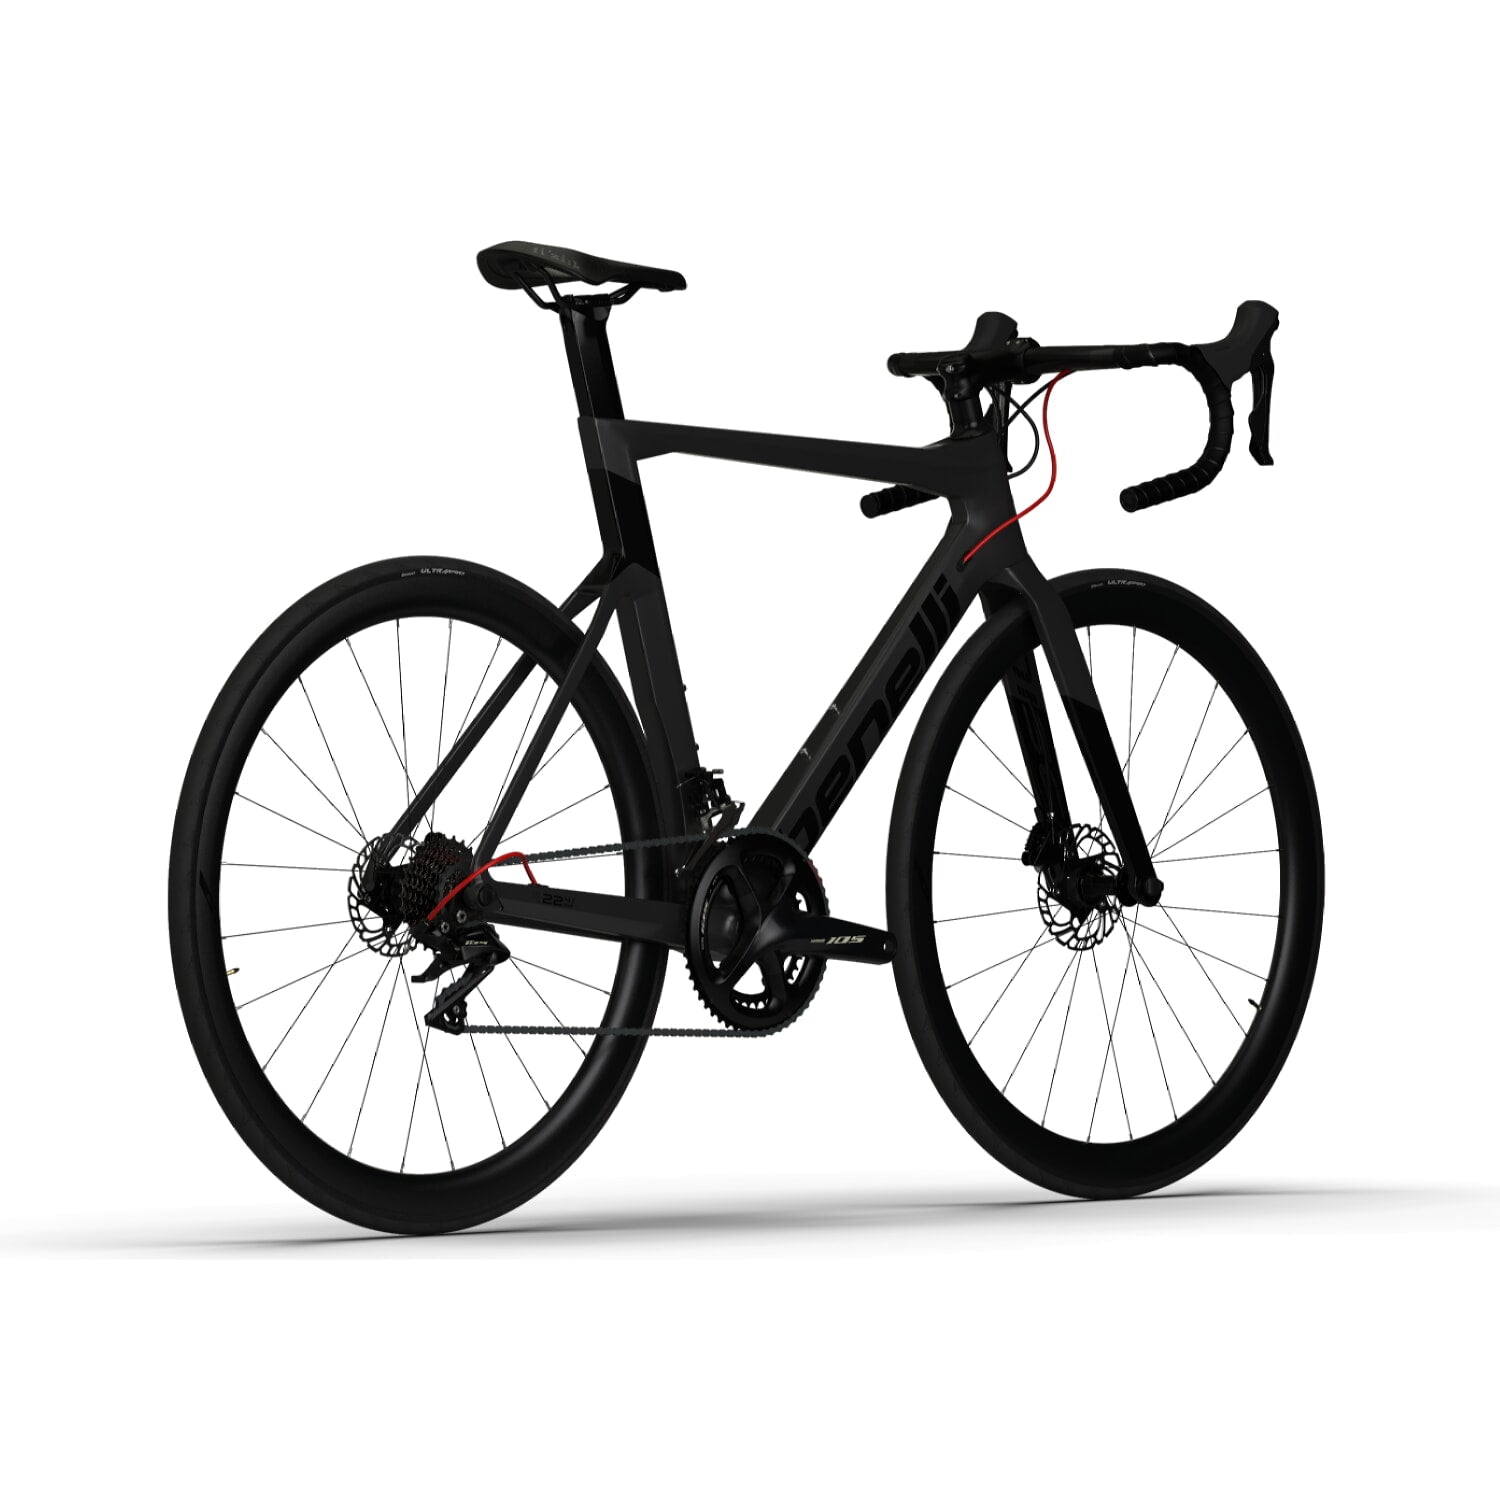 Bicicleta Ruta Benelli Carb.(R22 4.0 Exp Carb Disk) Color Gris Oscuro/Negro Talla L